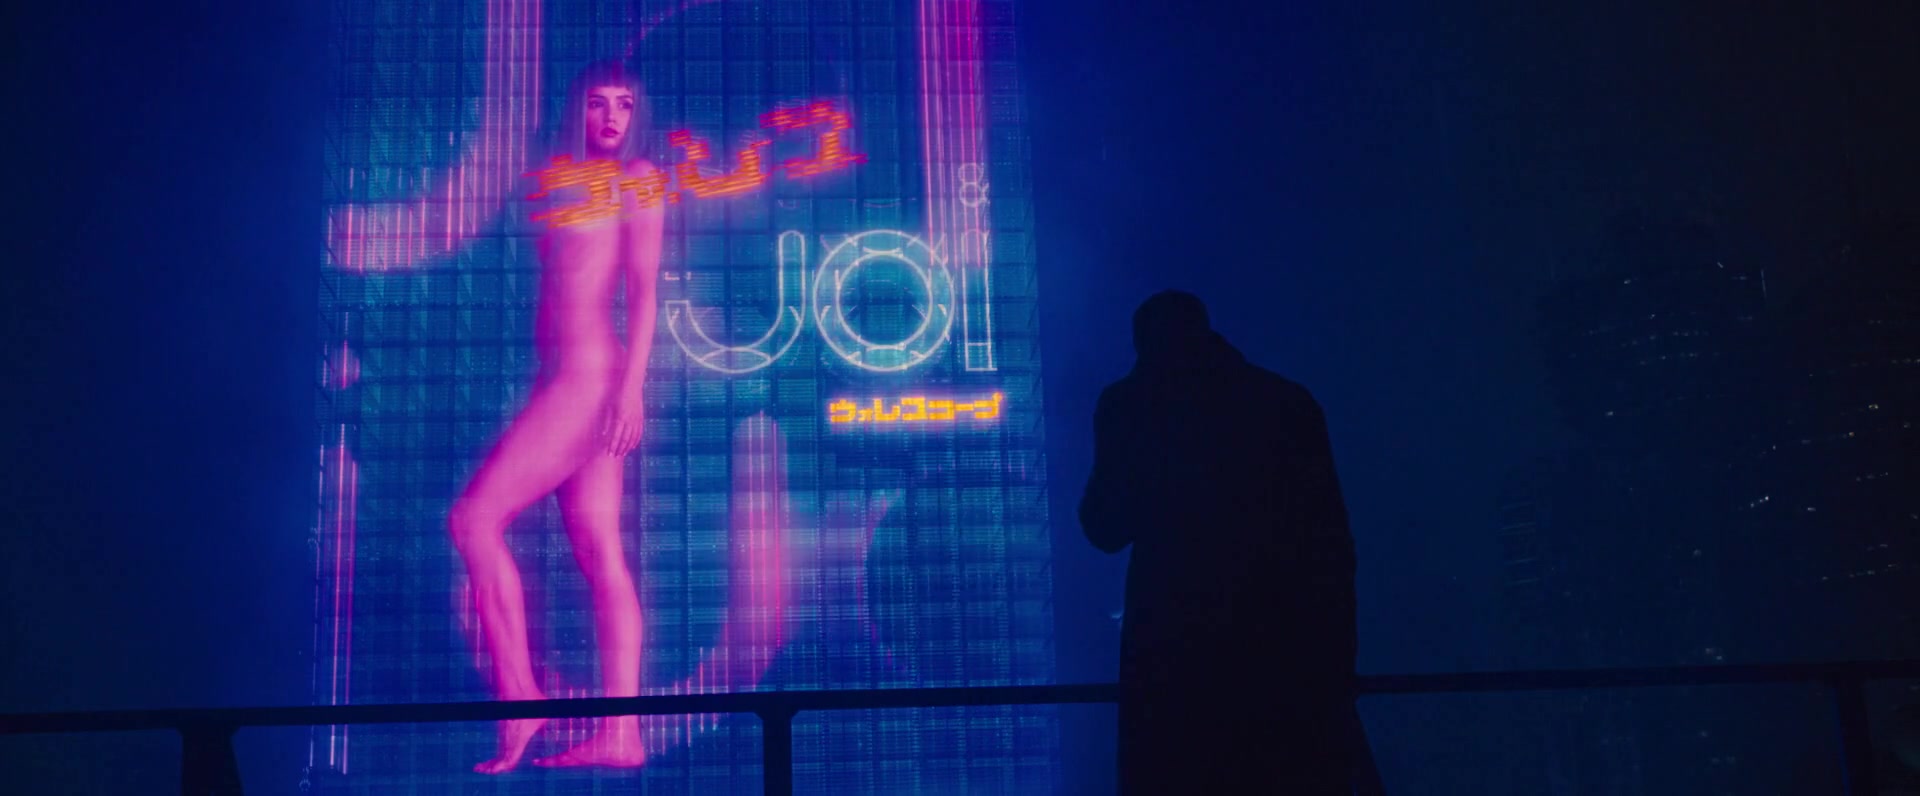 Ana de Armas Hologram scene from Blade Runner 2049